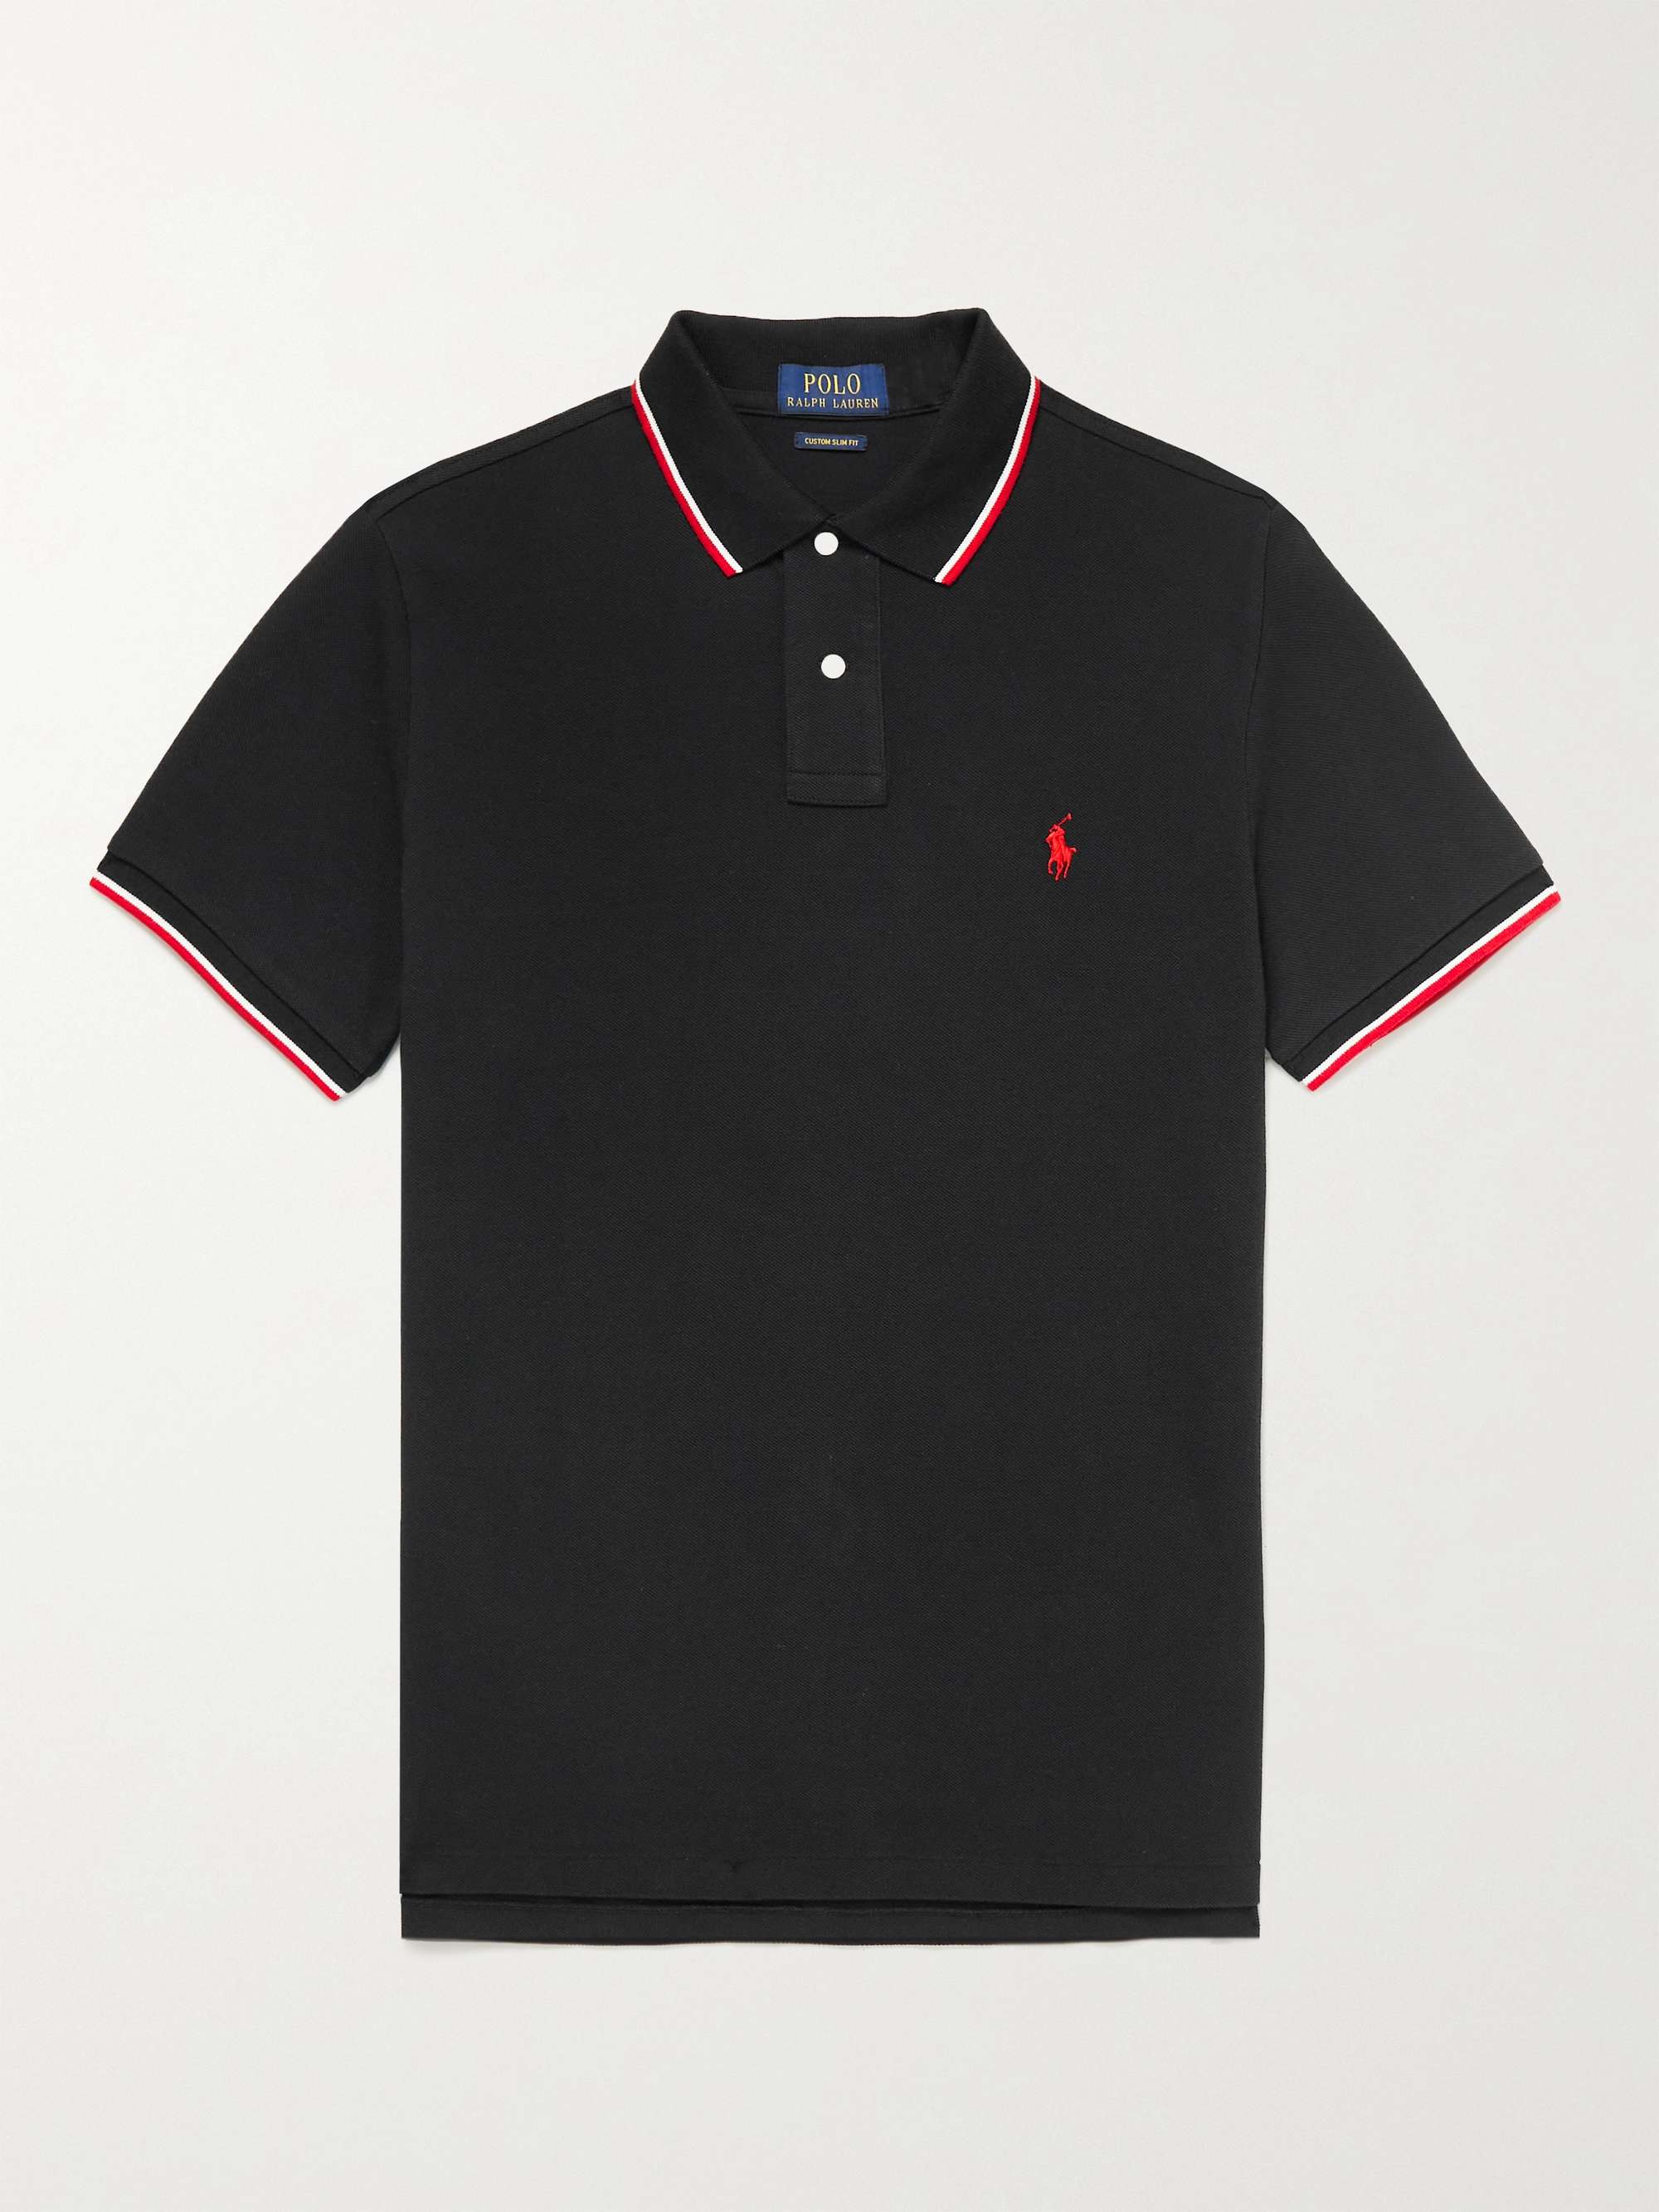 Black Slim-Fit Contrast-Tipped Cotton-Piqué Polo Shirt | POLO RALPH LAUREN  | MR PORTER